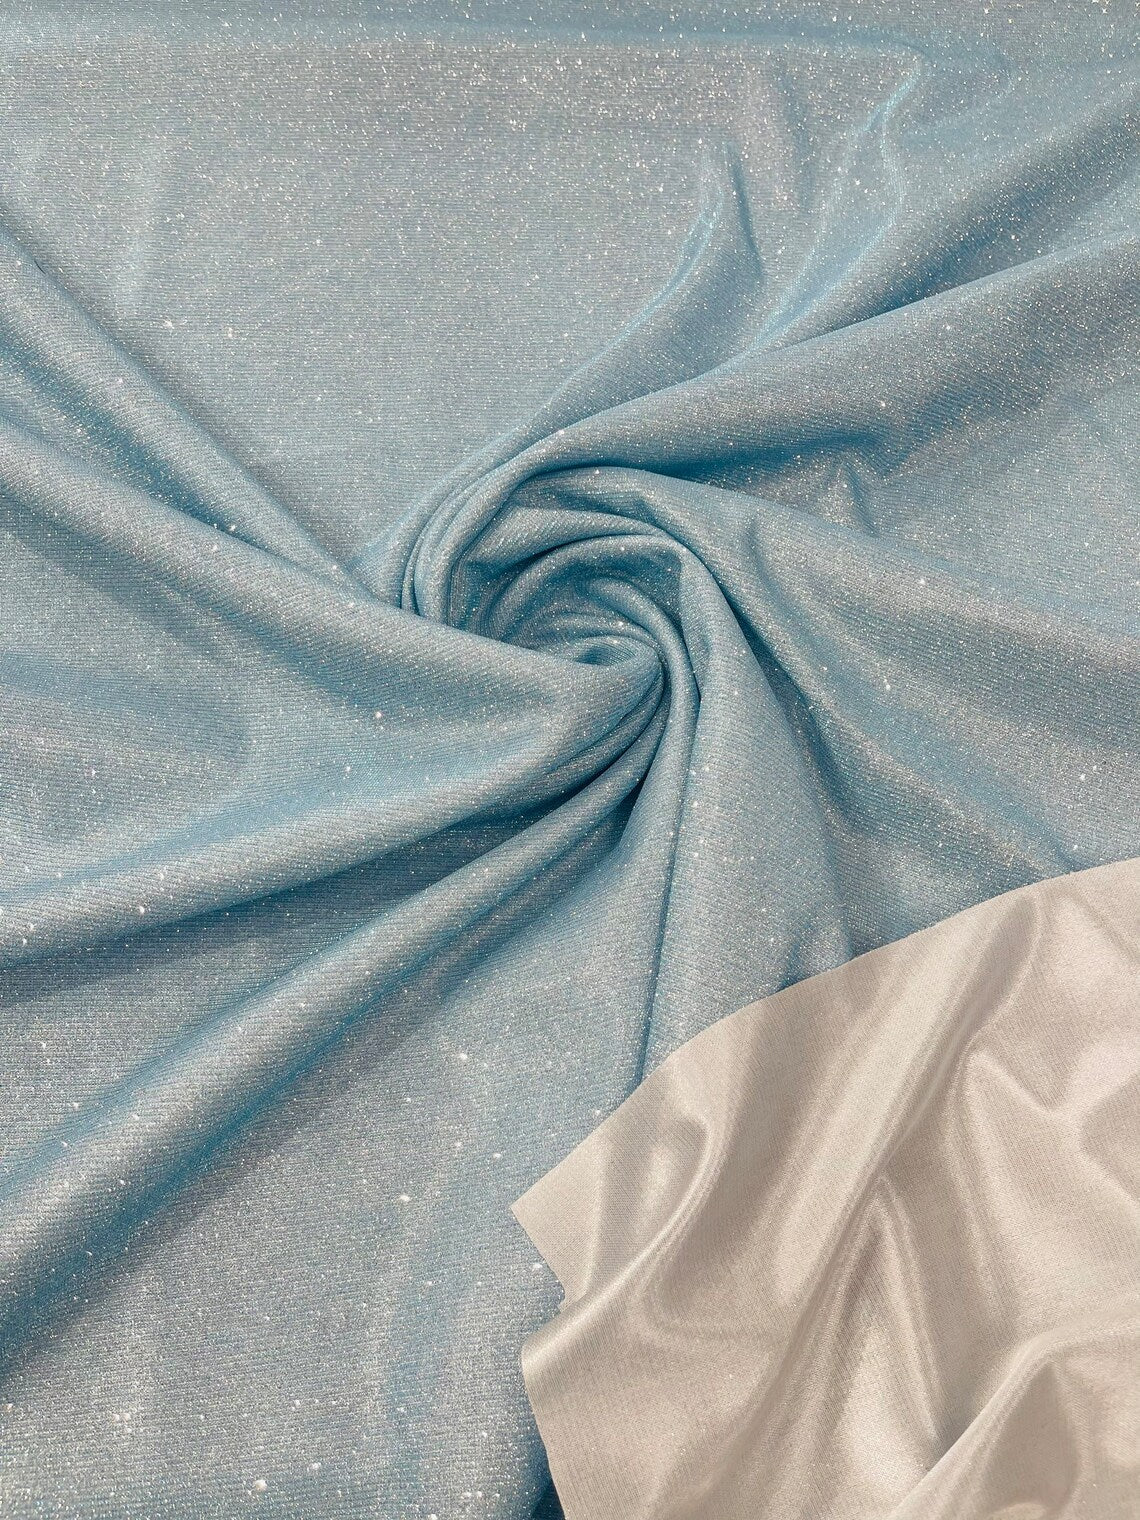 Silver Lurex Glitter Fabric/ Glimmer/ Silver Shimmer Fabric, Silver Glitter  Fabric for Gown, Backdrop, Drapes by Yard -  Israel